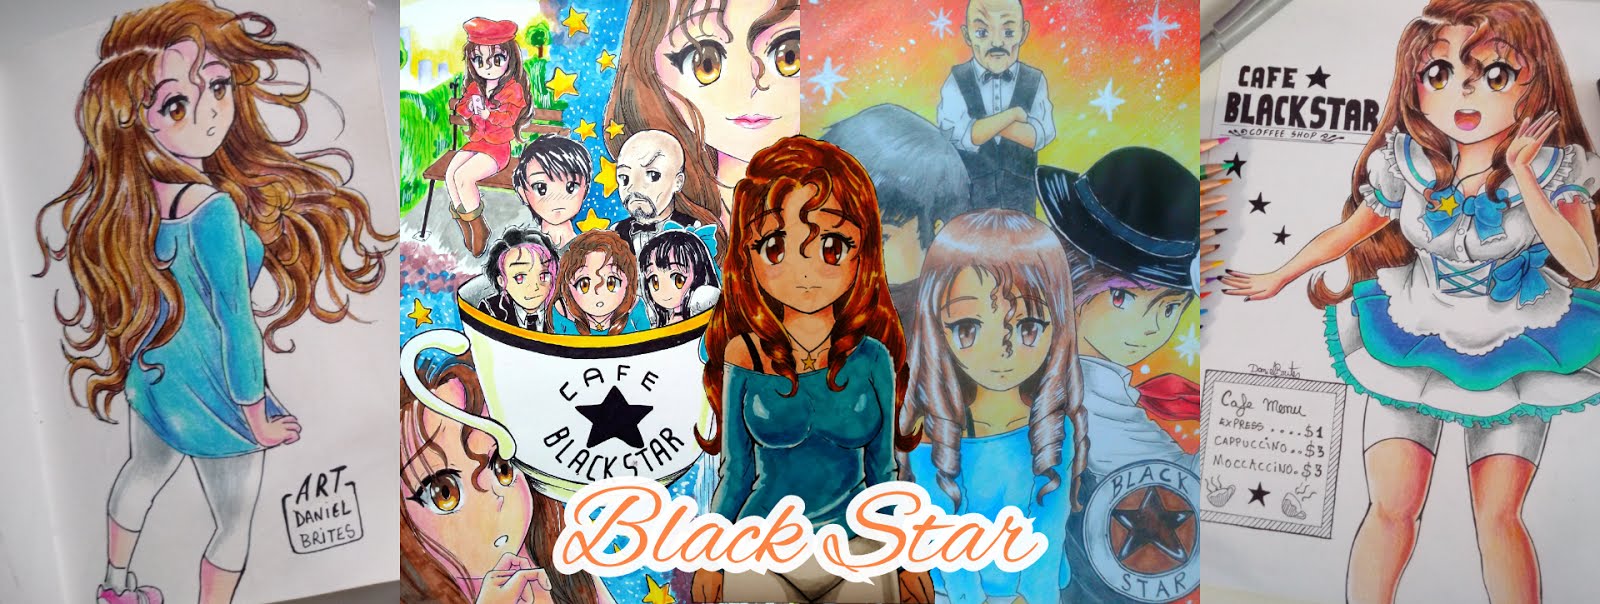 Café Black Star